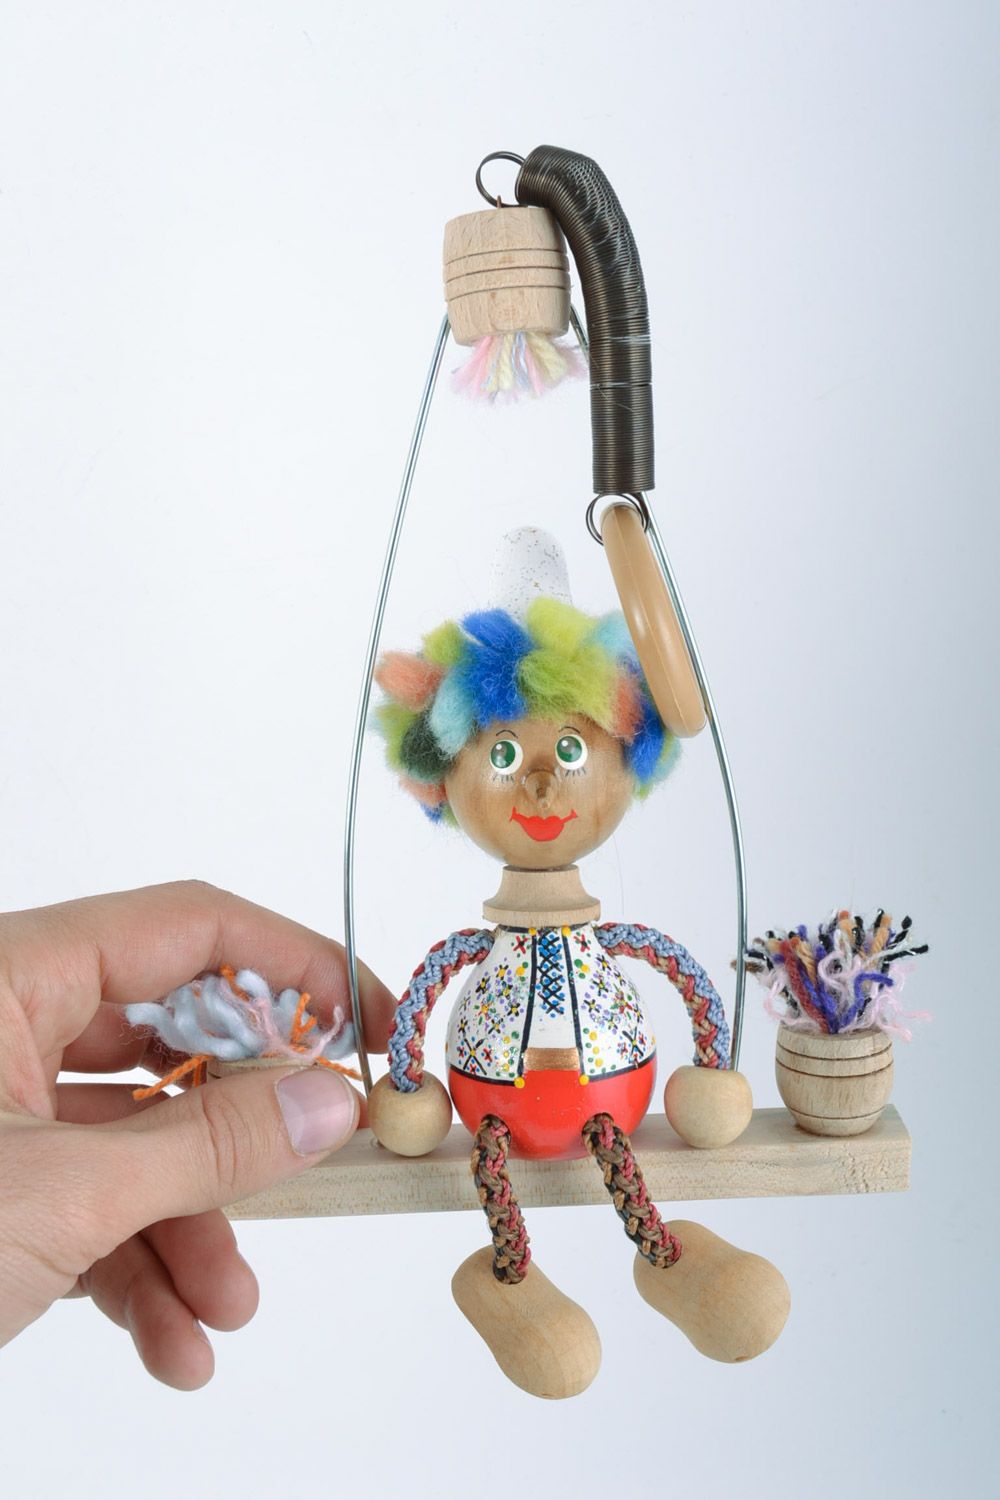 Designer Holz Spielzeug Junge mit Schaukel und Bemalung künstlerische Handarbeit foto 2